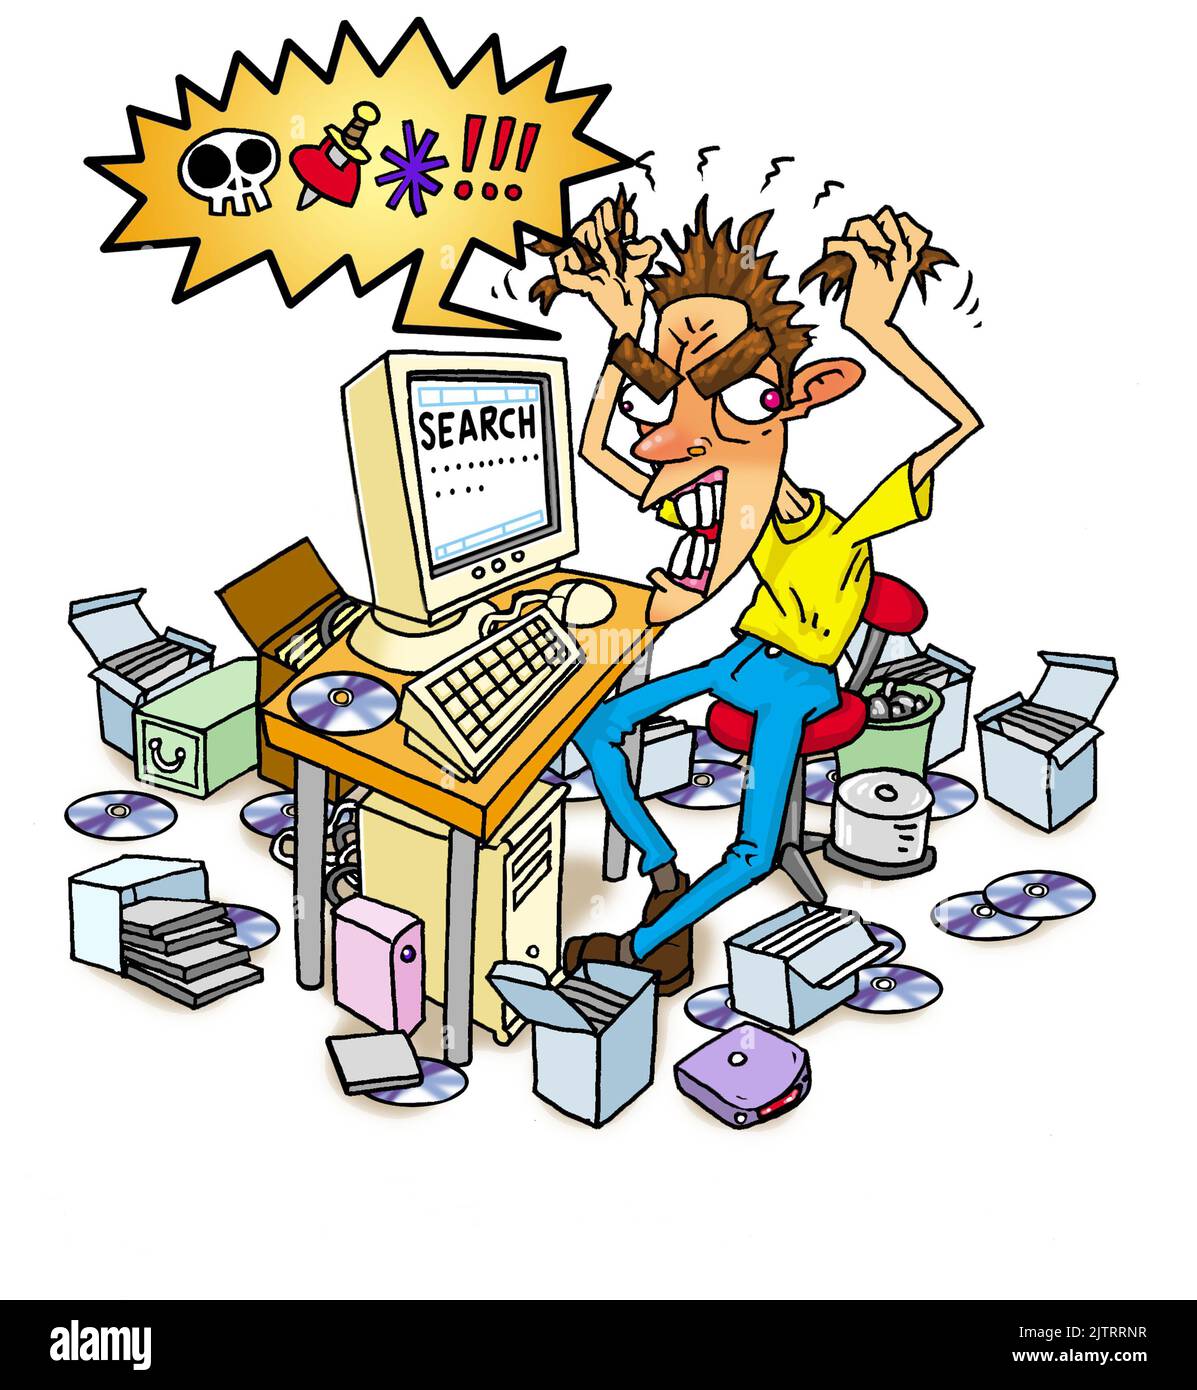 Concept art d'un homme en colère, entouré de matériel informatique, recherchant dans le stockage en ligne, les disques durs d'ordinateur et les CD-ROM pour les fichiers de données manquants/perdus. Banque D'Images